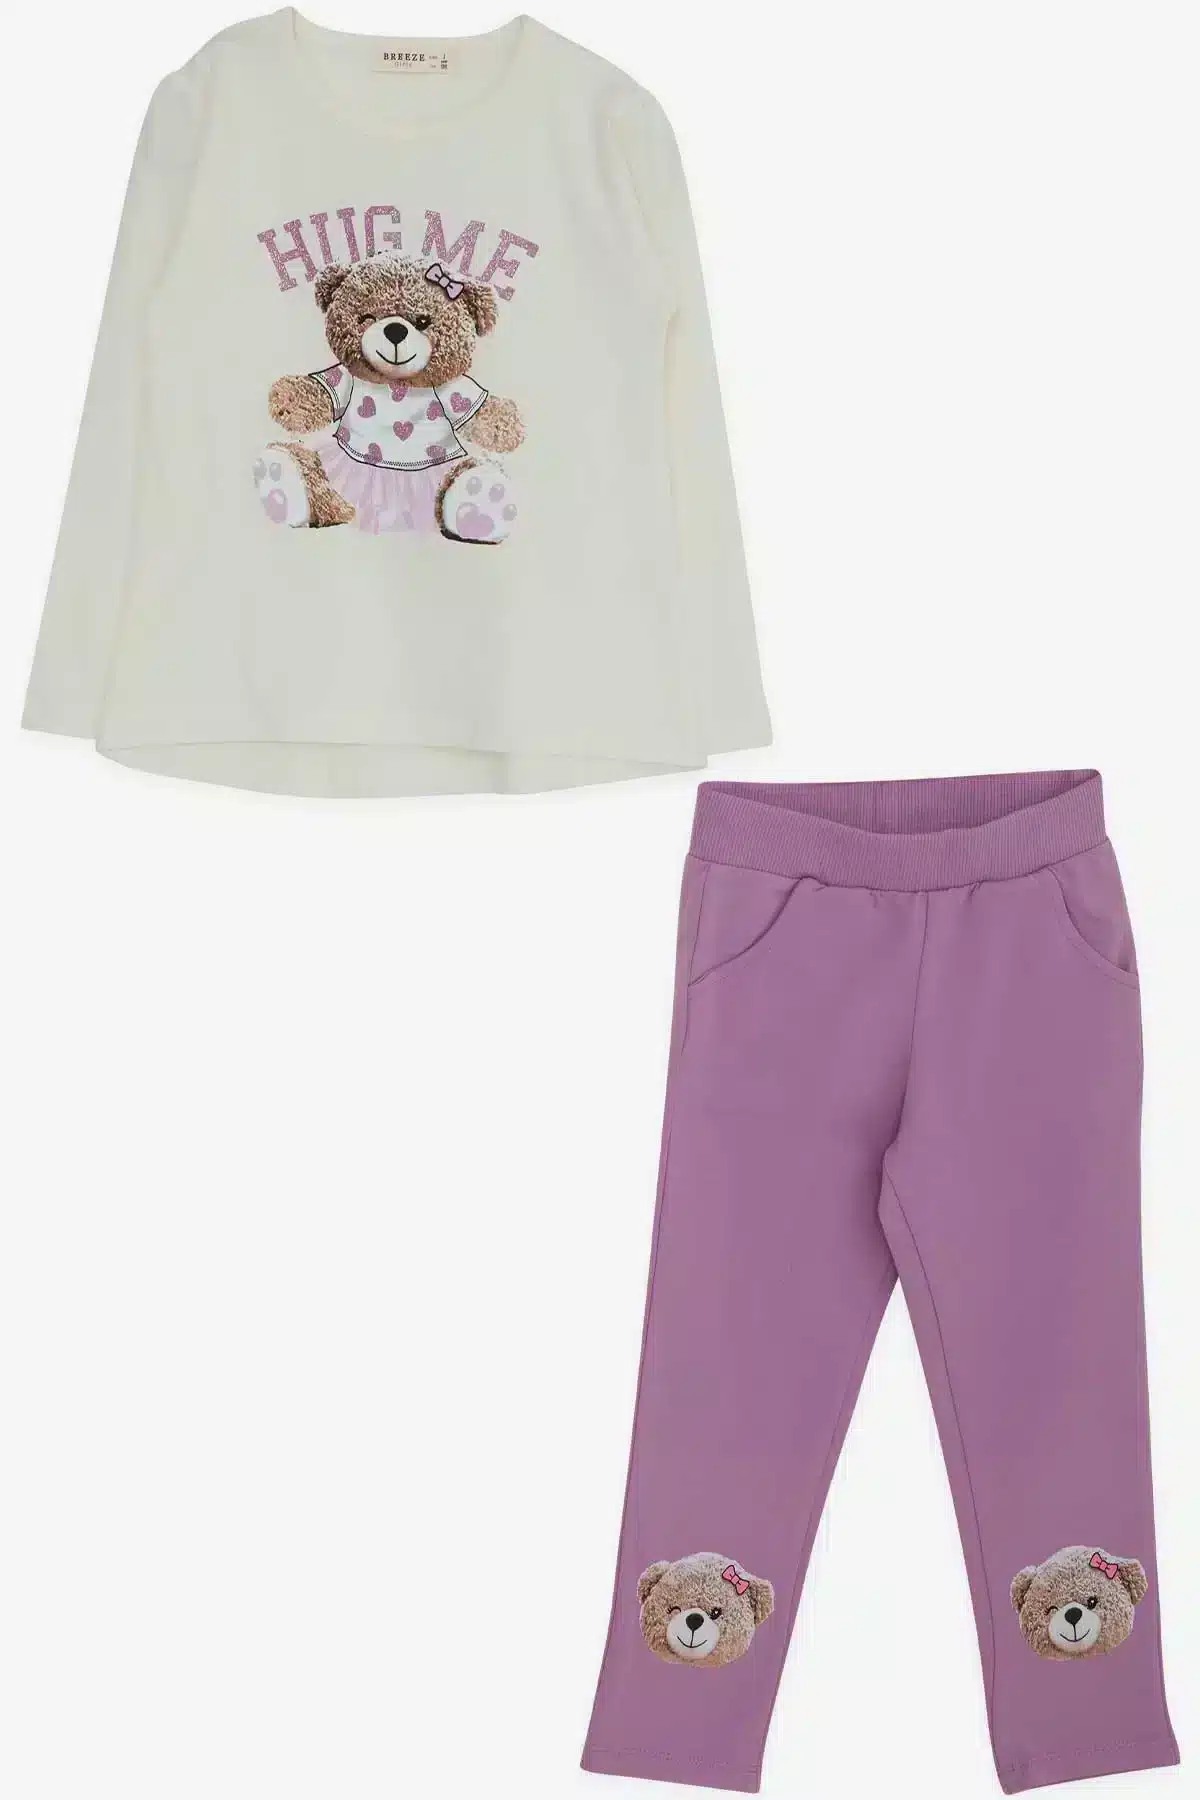 Κολάν & μπλούζα με τύπωμα αρκουδάκι "HUG ME" (18 μηνών)